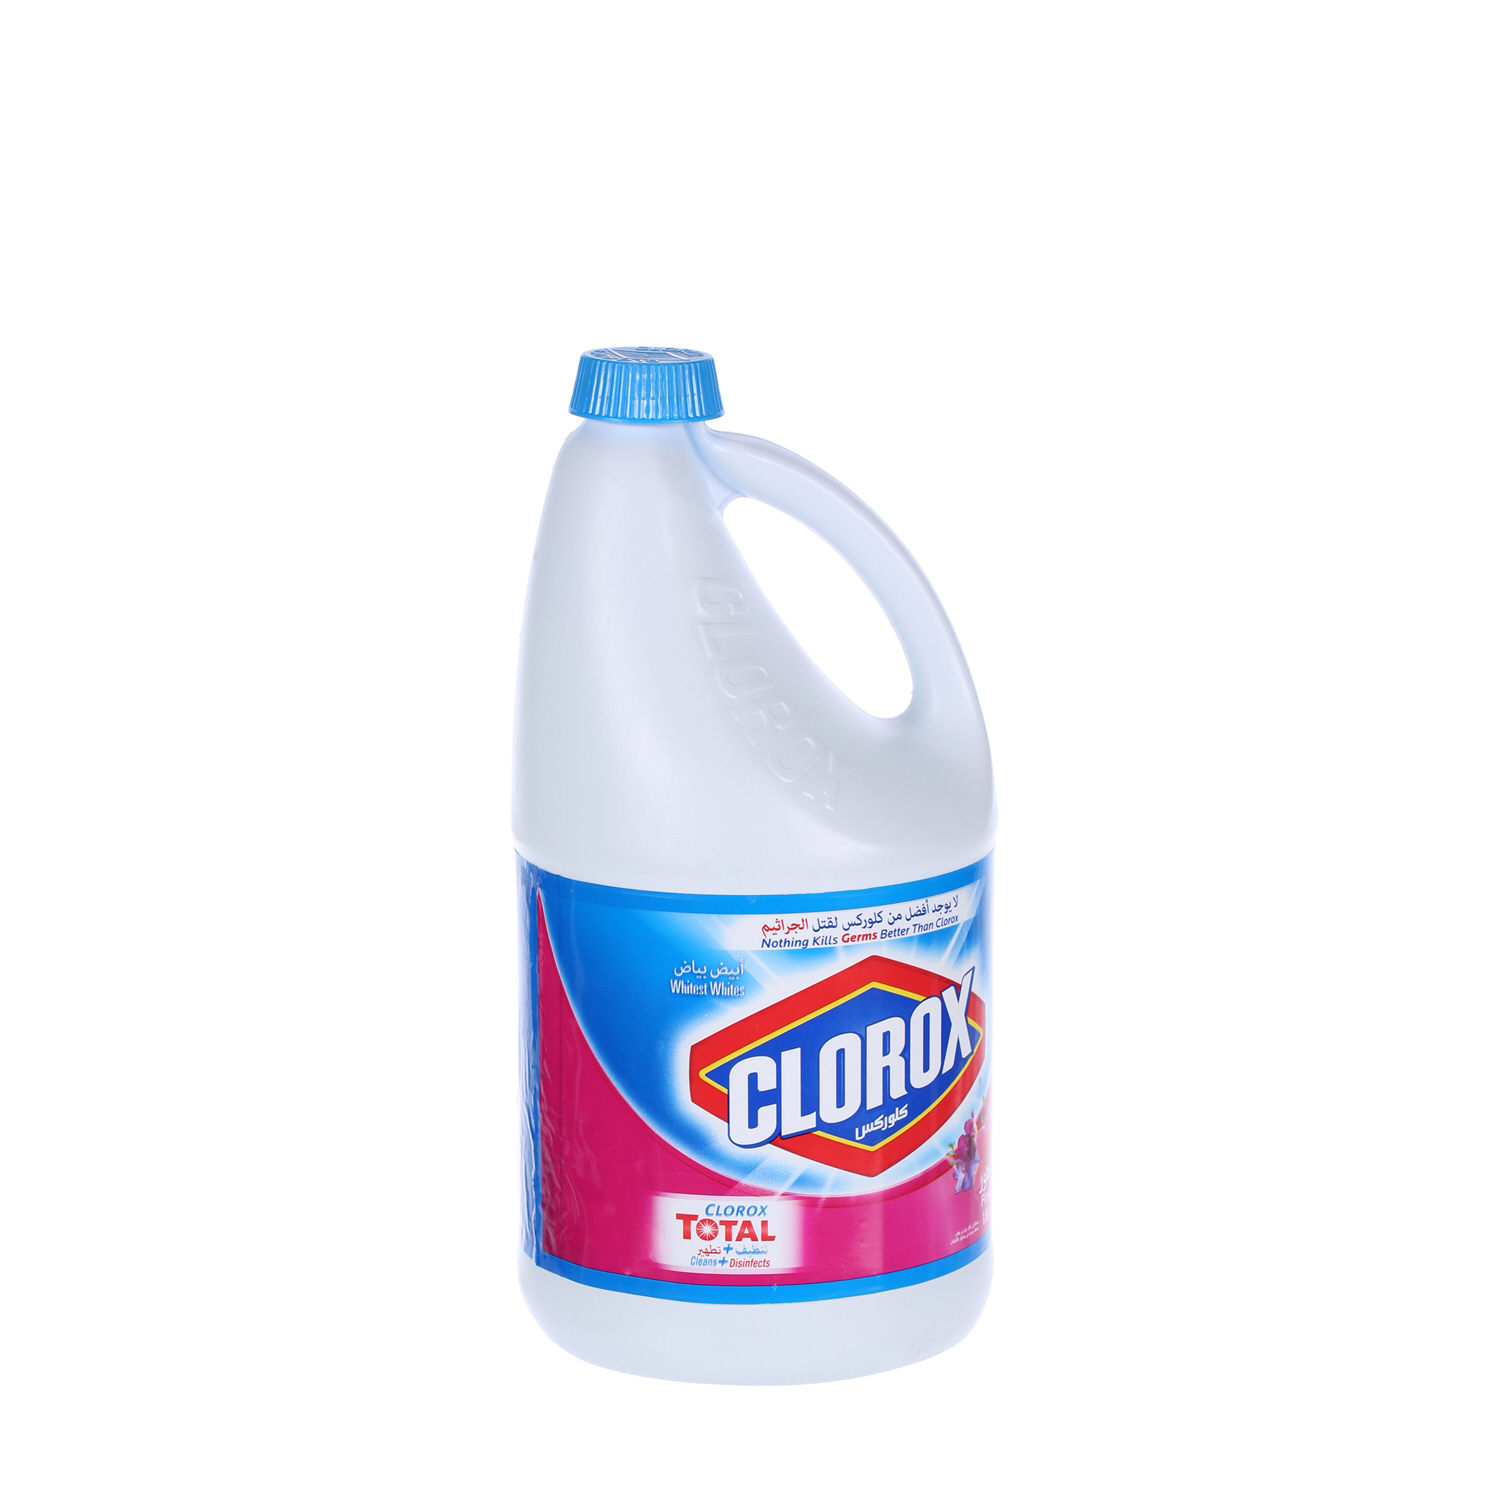 Clorox Total Floral Bleach Liquid Floral Fresh 0.5 Gallon